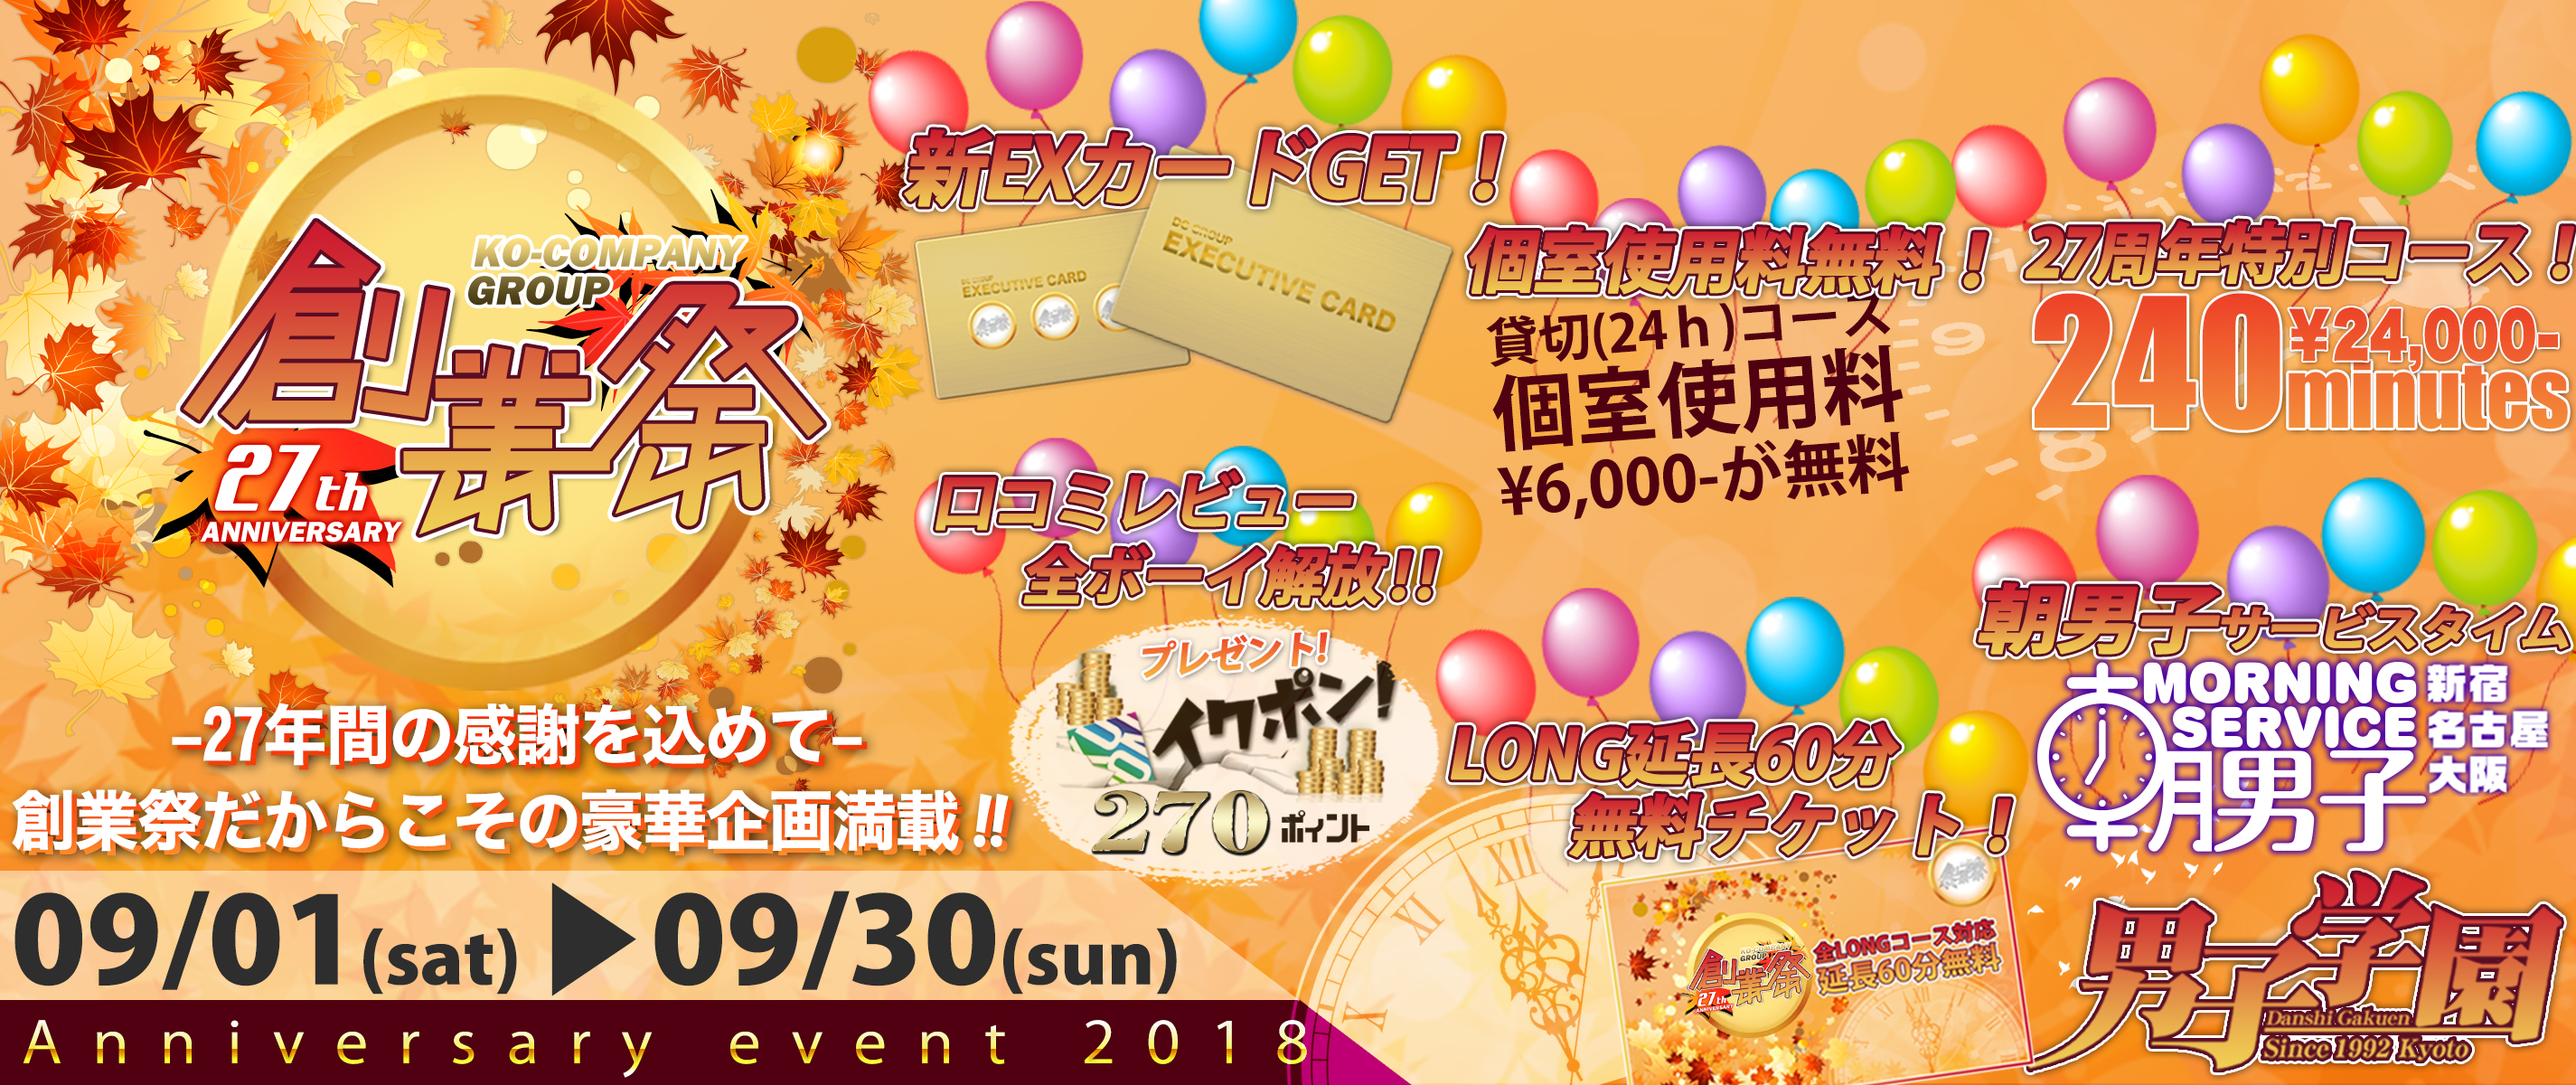 創業祭☆27th Anniversary